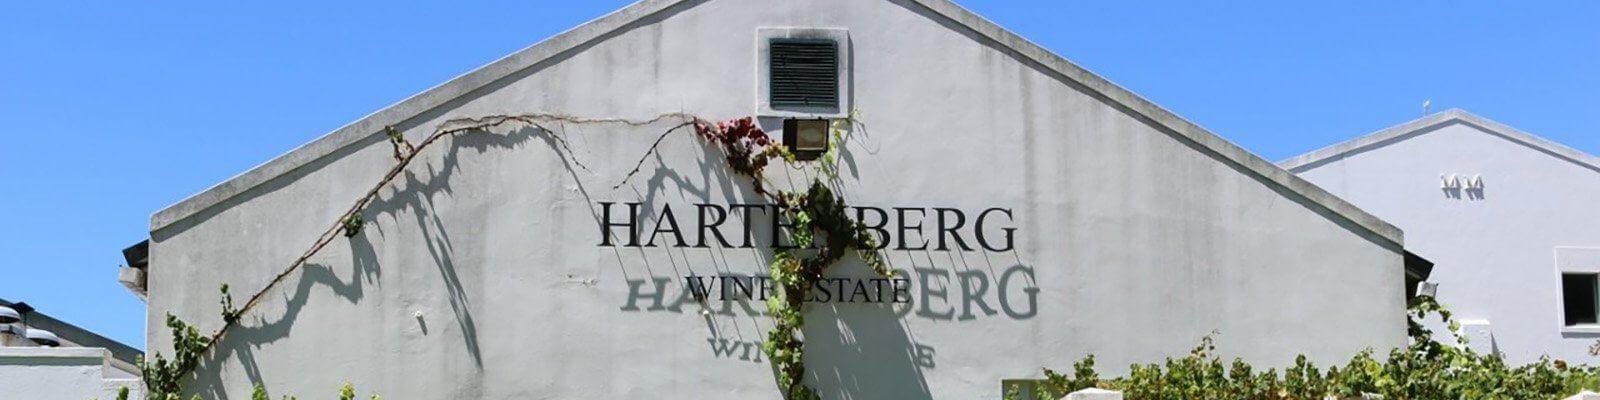 Onze collectie Hartenberg - Vind deze bij Onshore Cellars uw jachtwijn leverancier